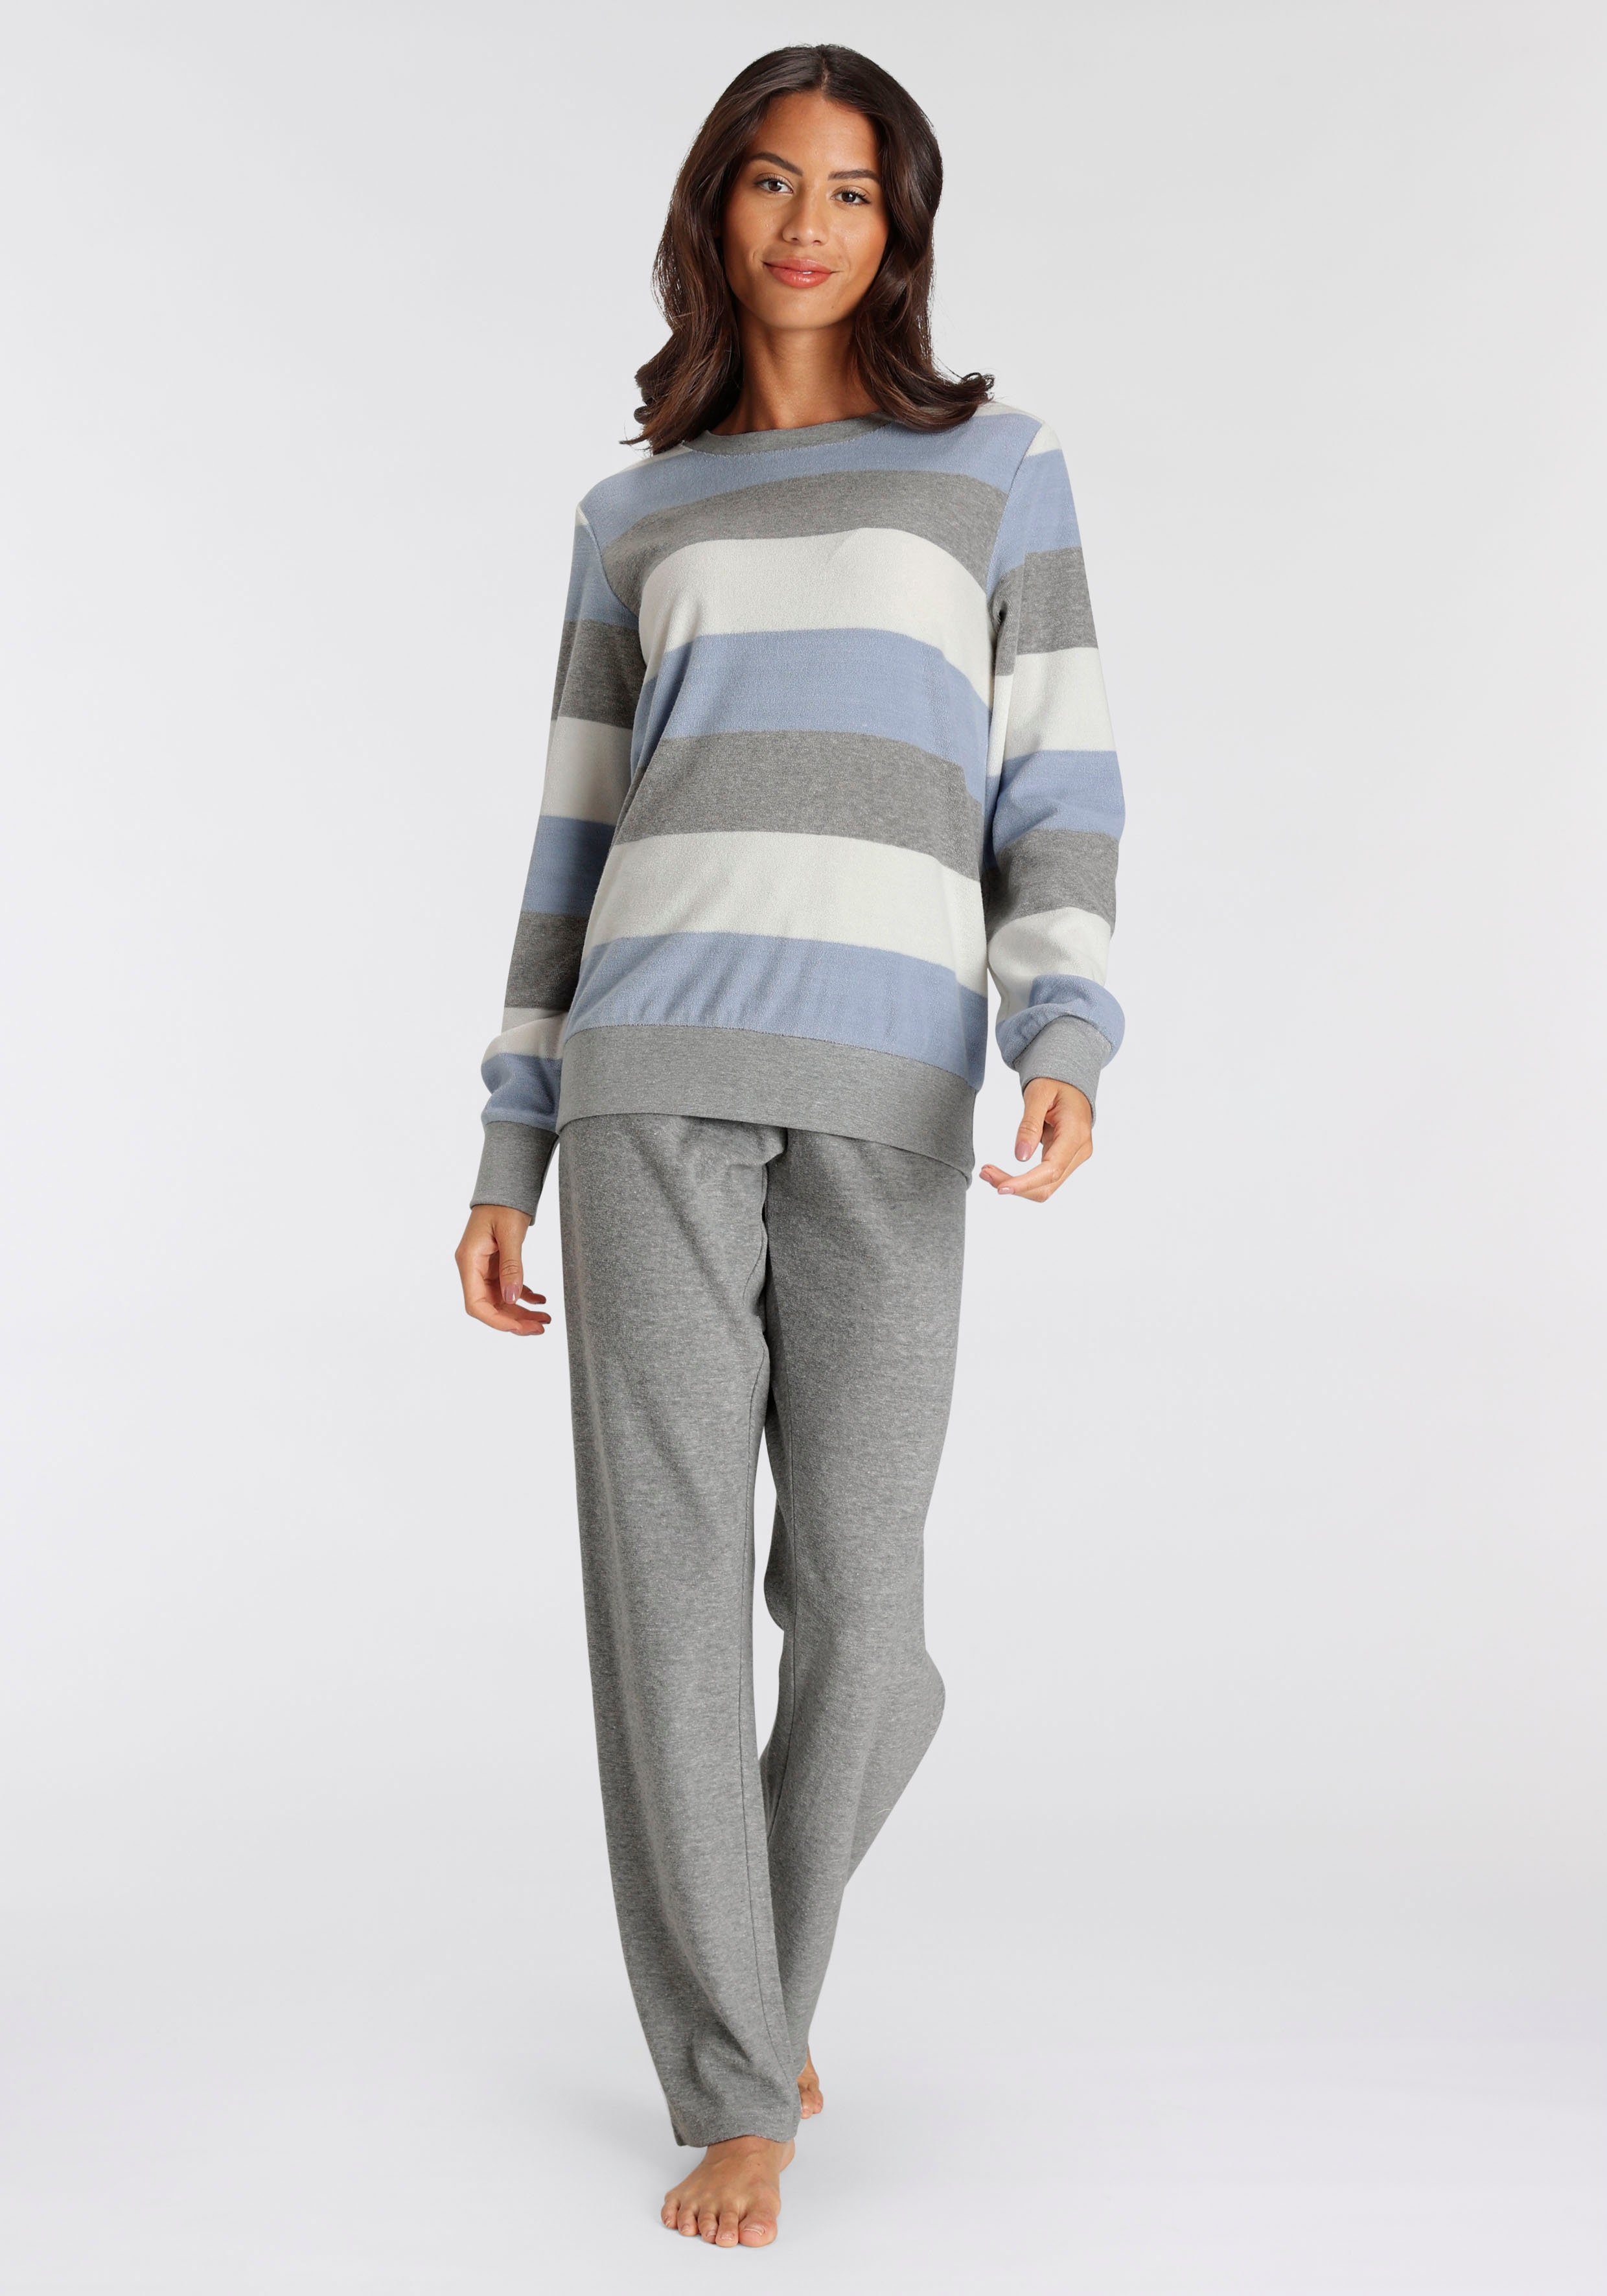 mit billiger Ware handeln Vivance Dreams Pyjama (2 tlg) weichem Frottée aus grau-blau Streifen Colorblock mit und